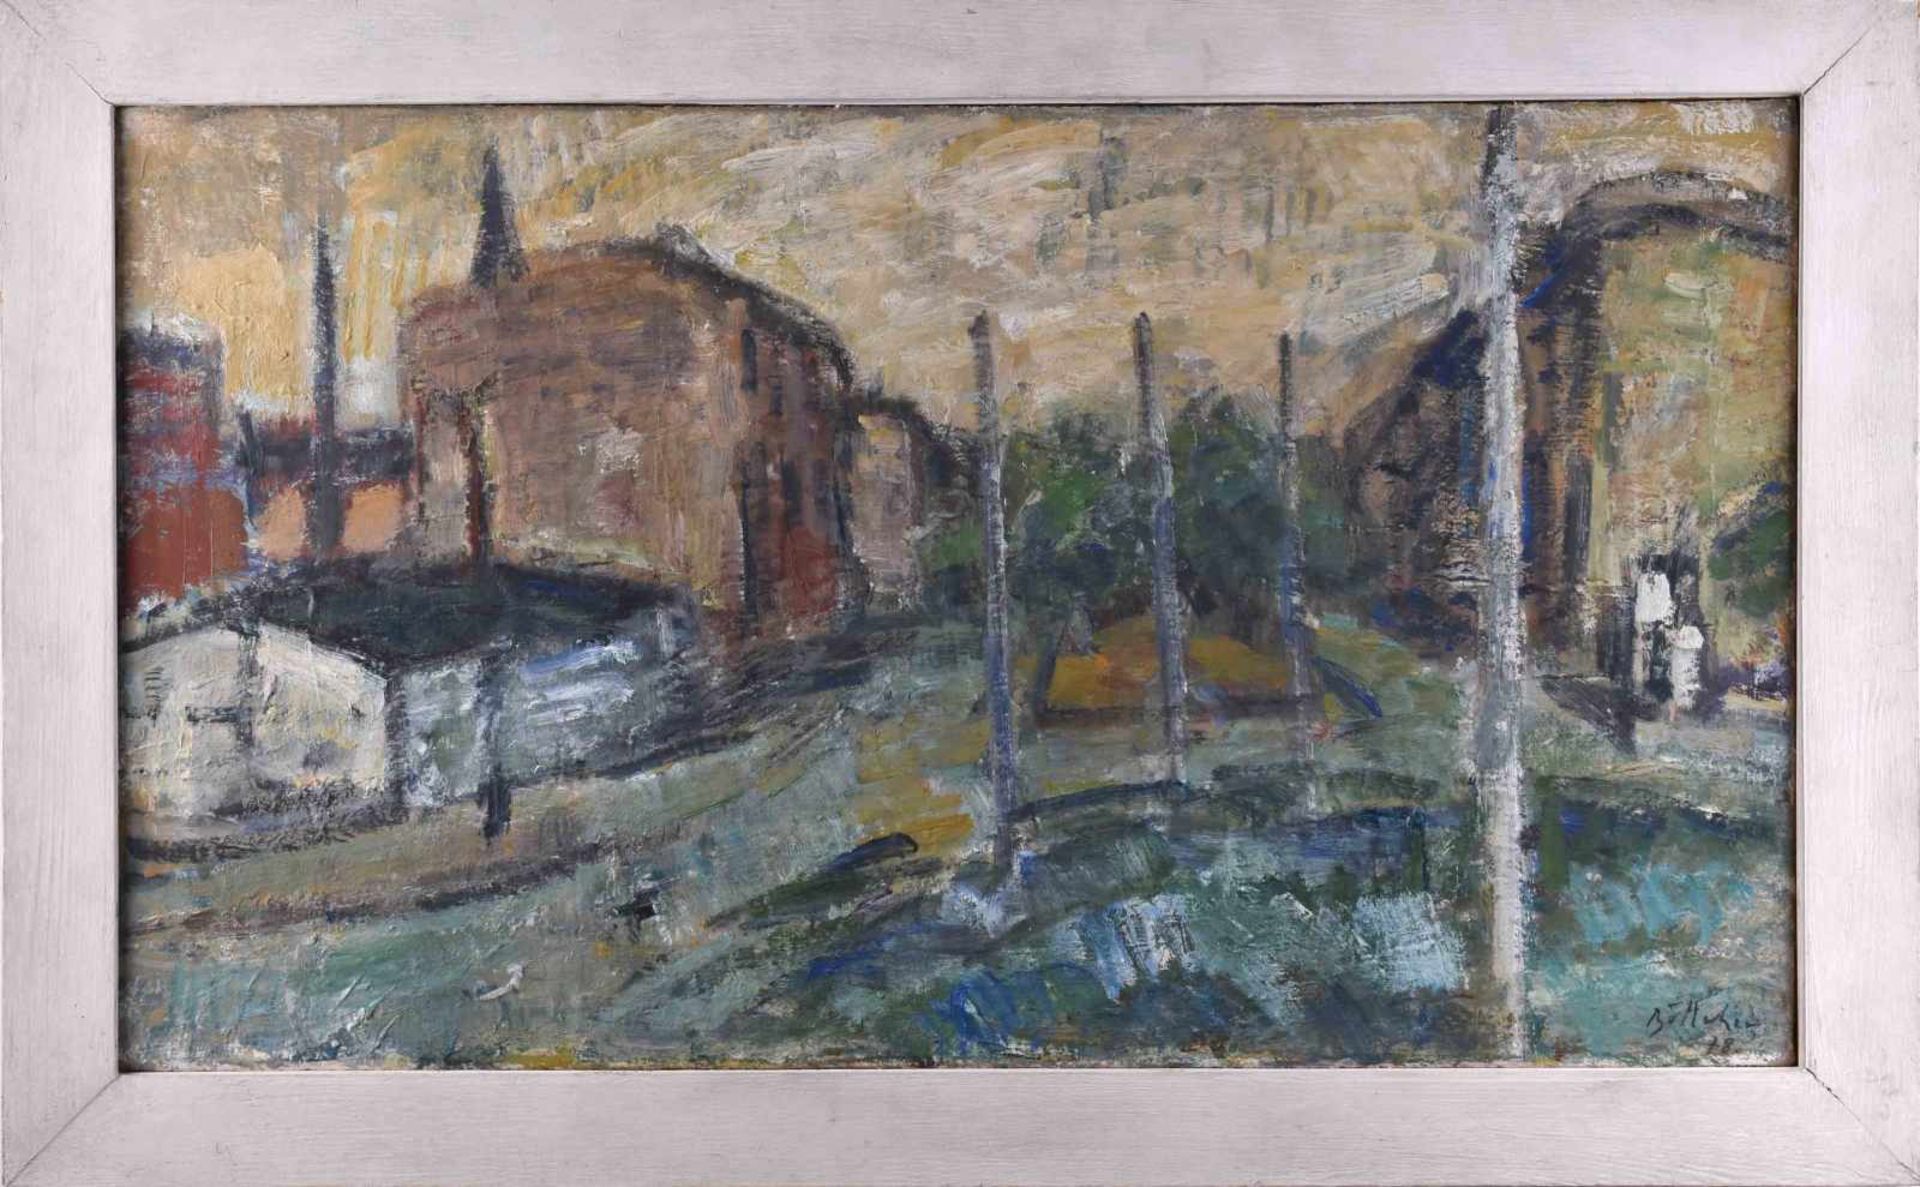 Manfred Richard BÖTTCHER (1933-2001)"Alter Bersarinplatz- Berlin"painting oil / canvas, 41 cm x 70.5 - Bild 2 aus 7